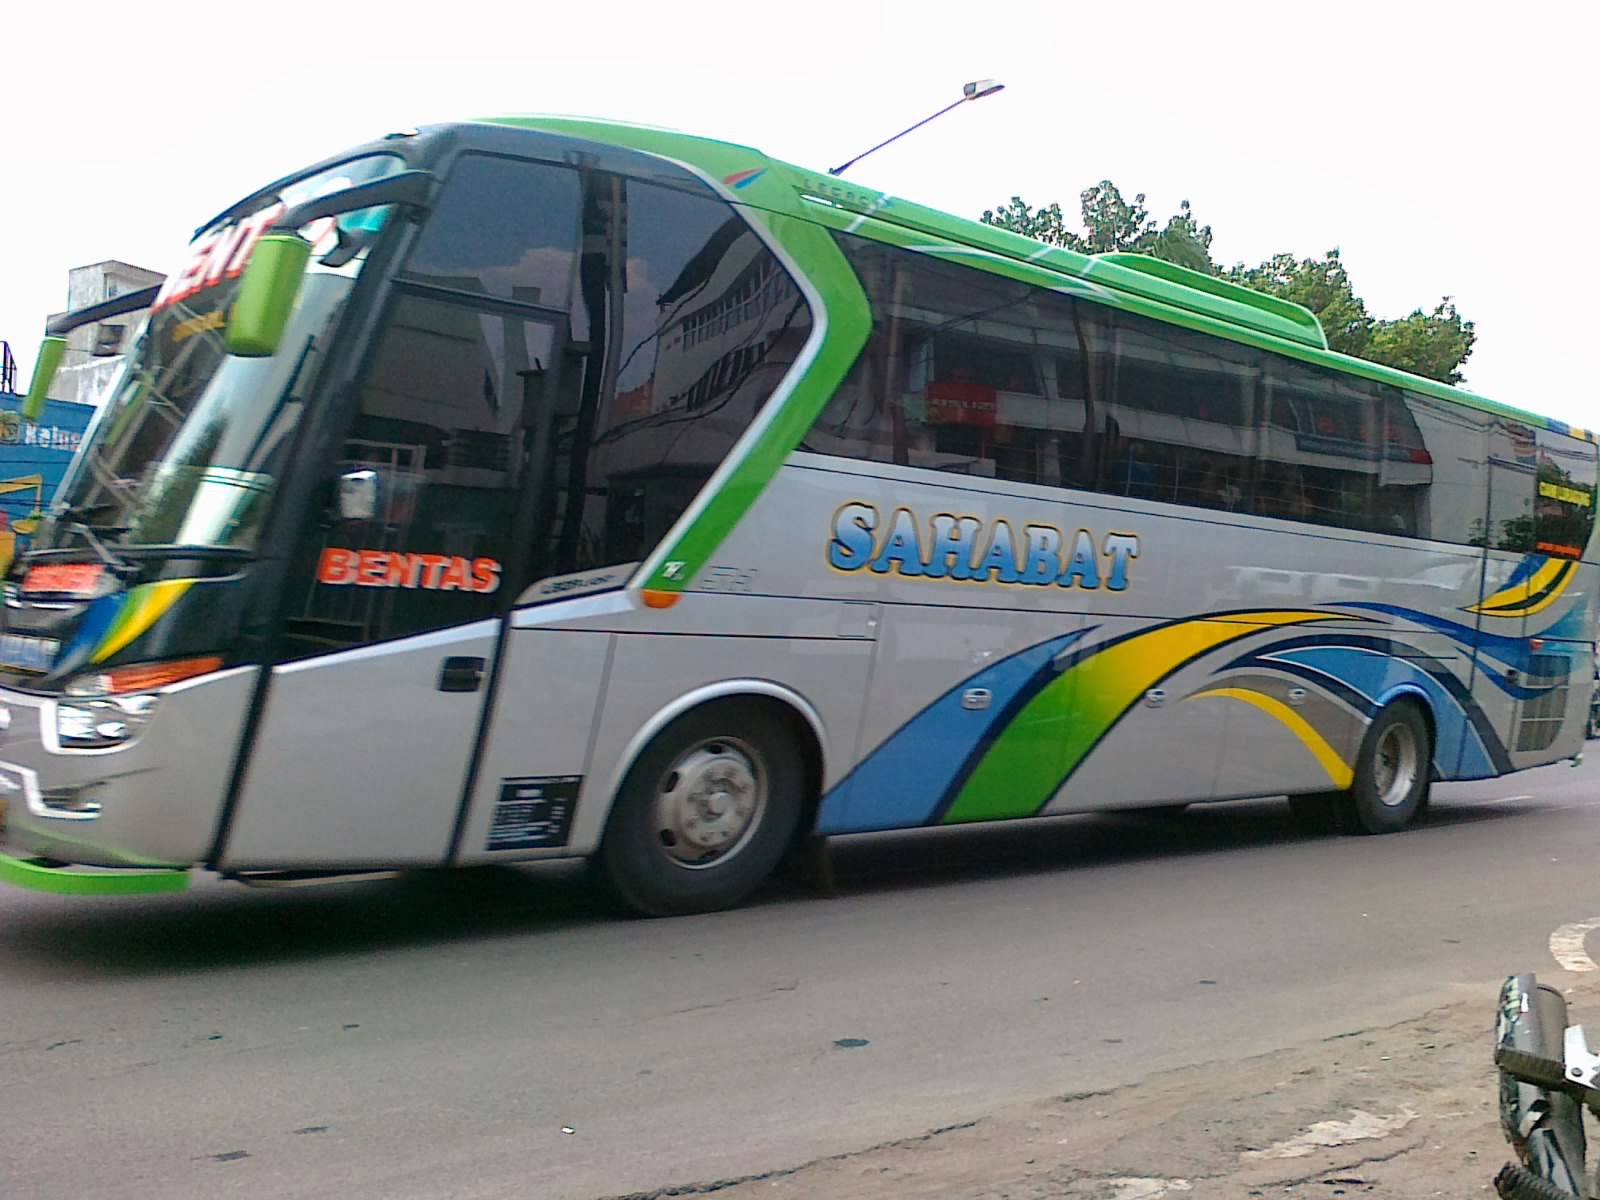 Garasibis Tridifa Trans Bali Bus Pariwisata